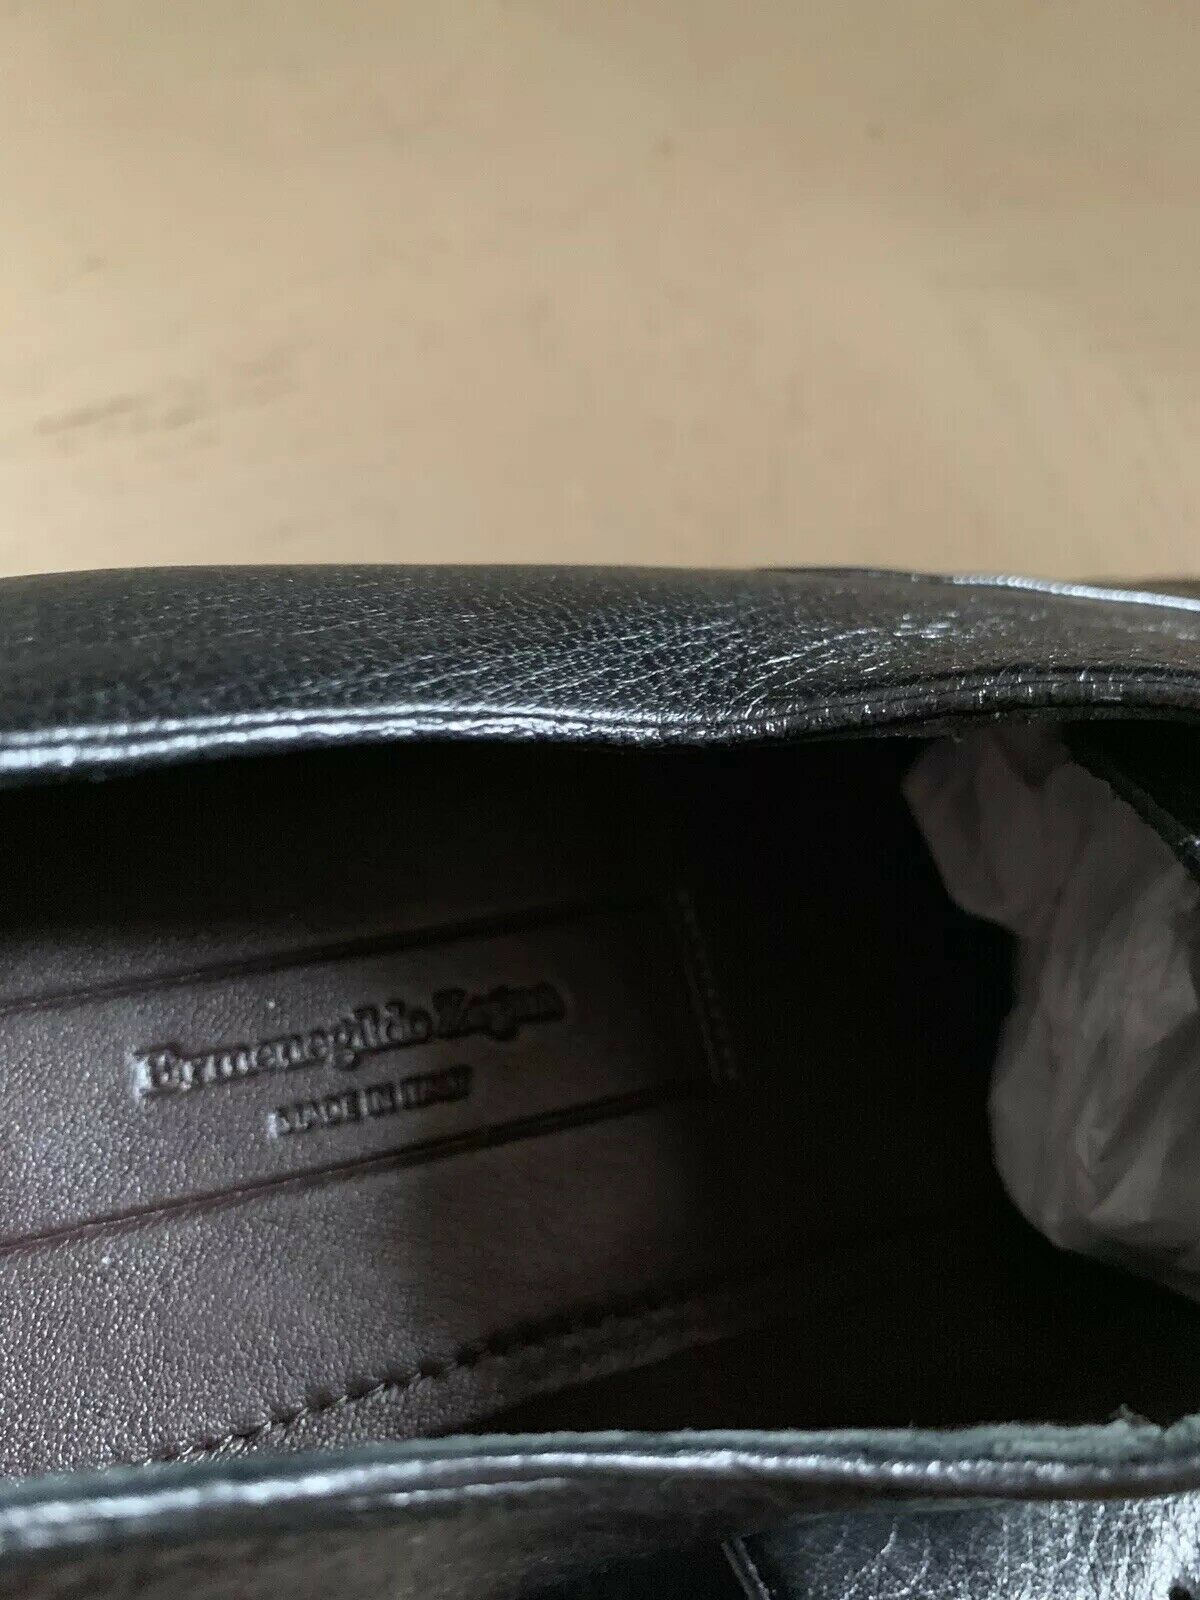 New $695 Ermenegildo Zegna Oxford Shoes Black 11.5 US ( 44.5 Eu ) Italy